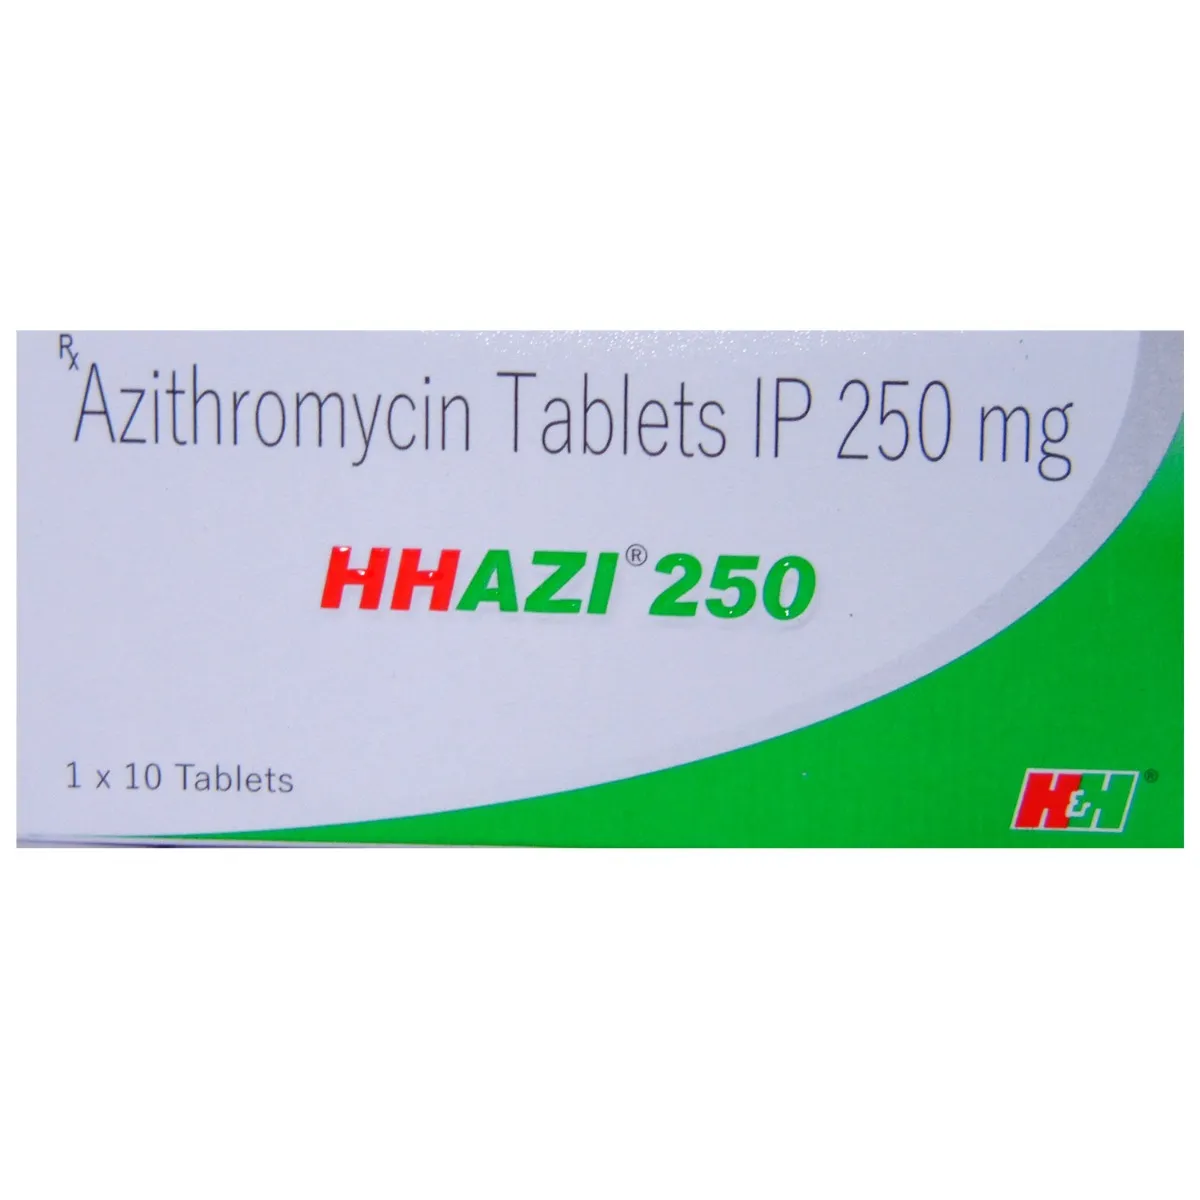 hhazi-250-tablet